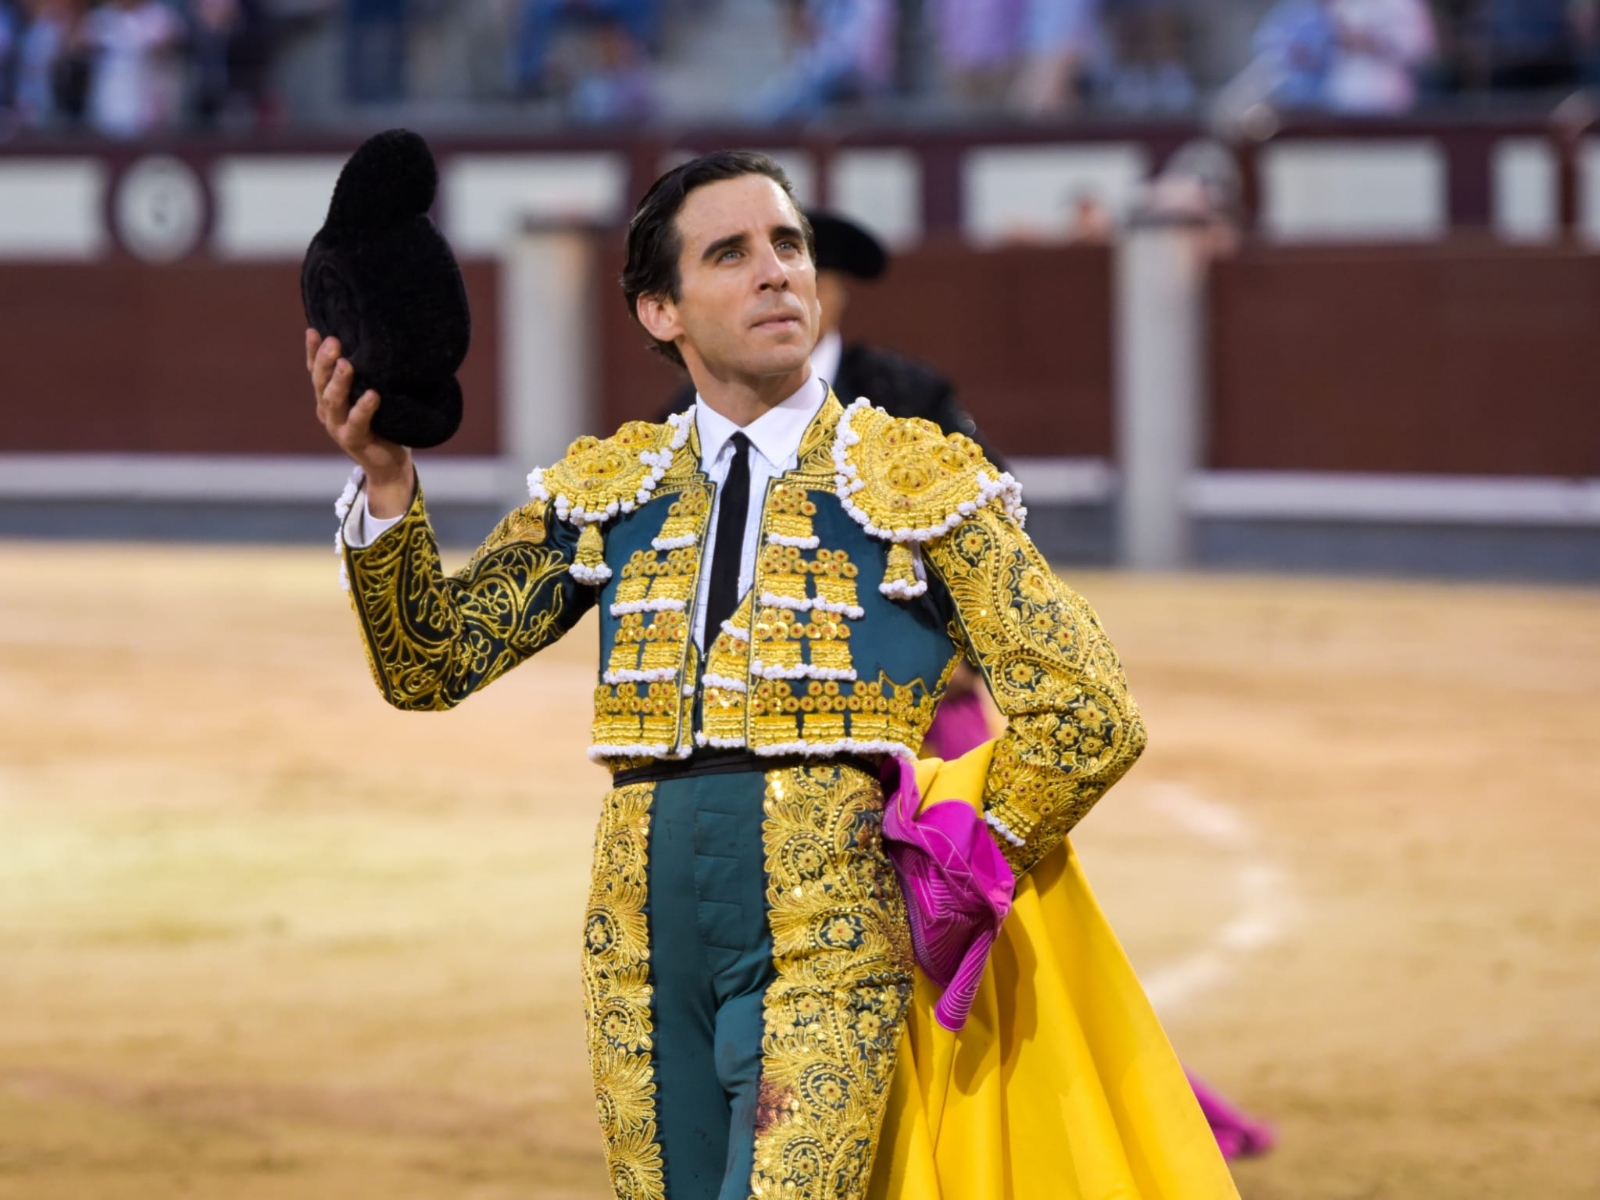 Ανάστατη η Ισπανία: Ο διάσημος ταυρομάχος Χουάν Ορτέγα παράτησε τη νύφη μια ώρα πριν τον γάμο!